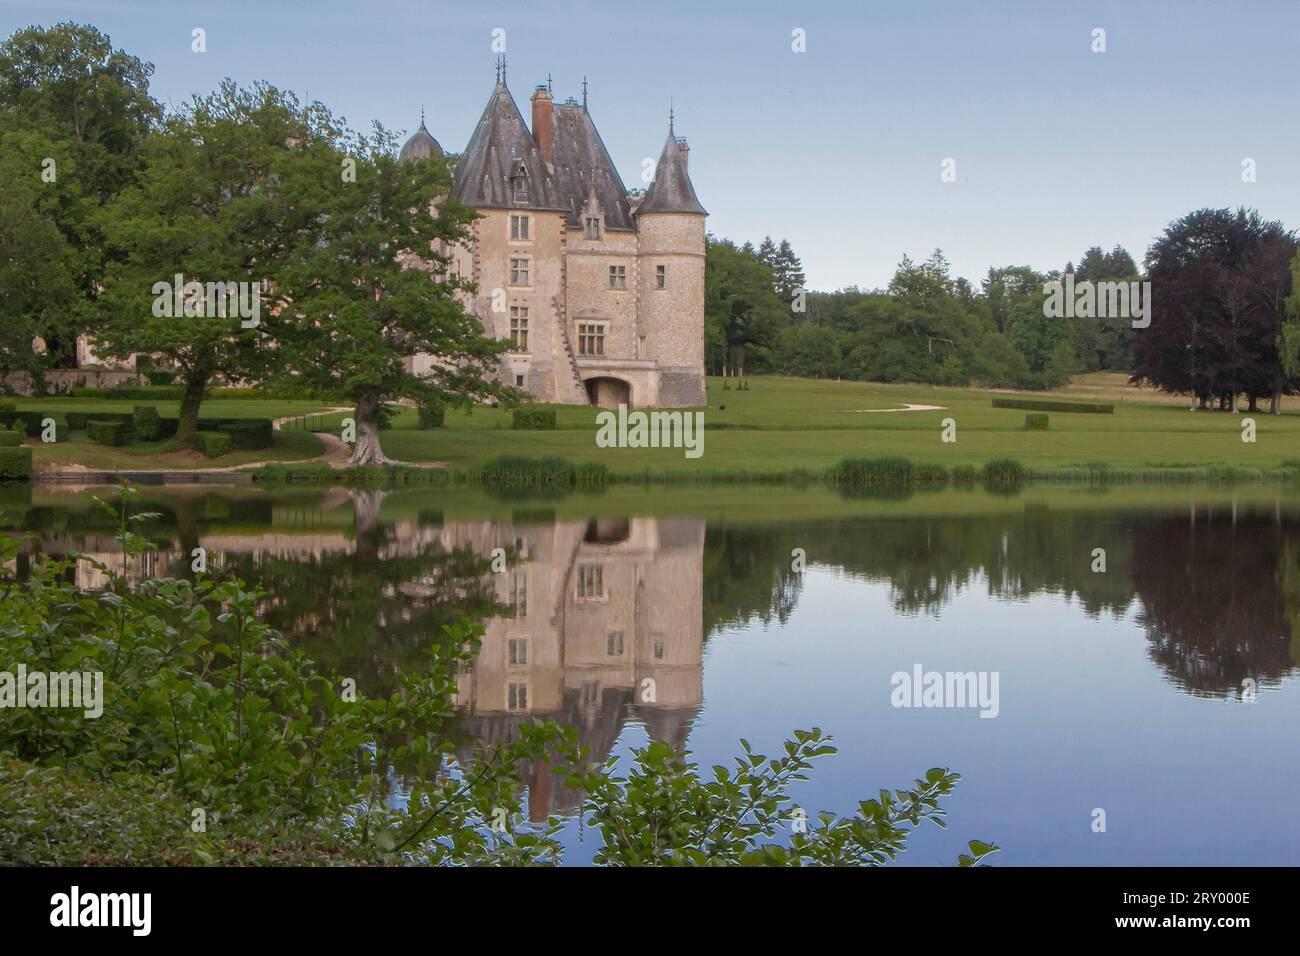 Loire, France -19 juin 2019 - réflexion dans un lac d'un beau château de conte de fées et de verdure environnante Banque D'Images